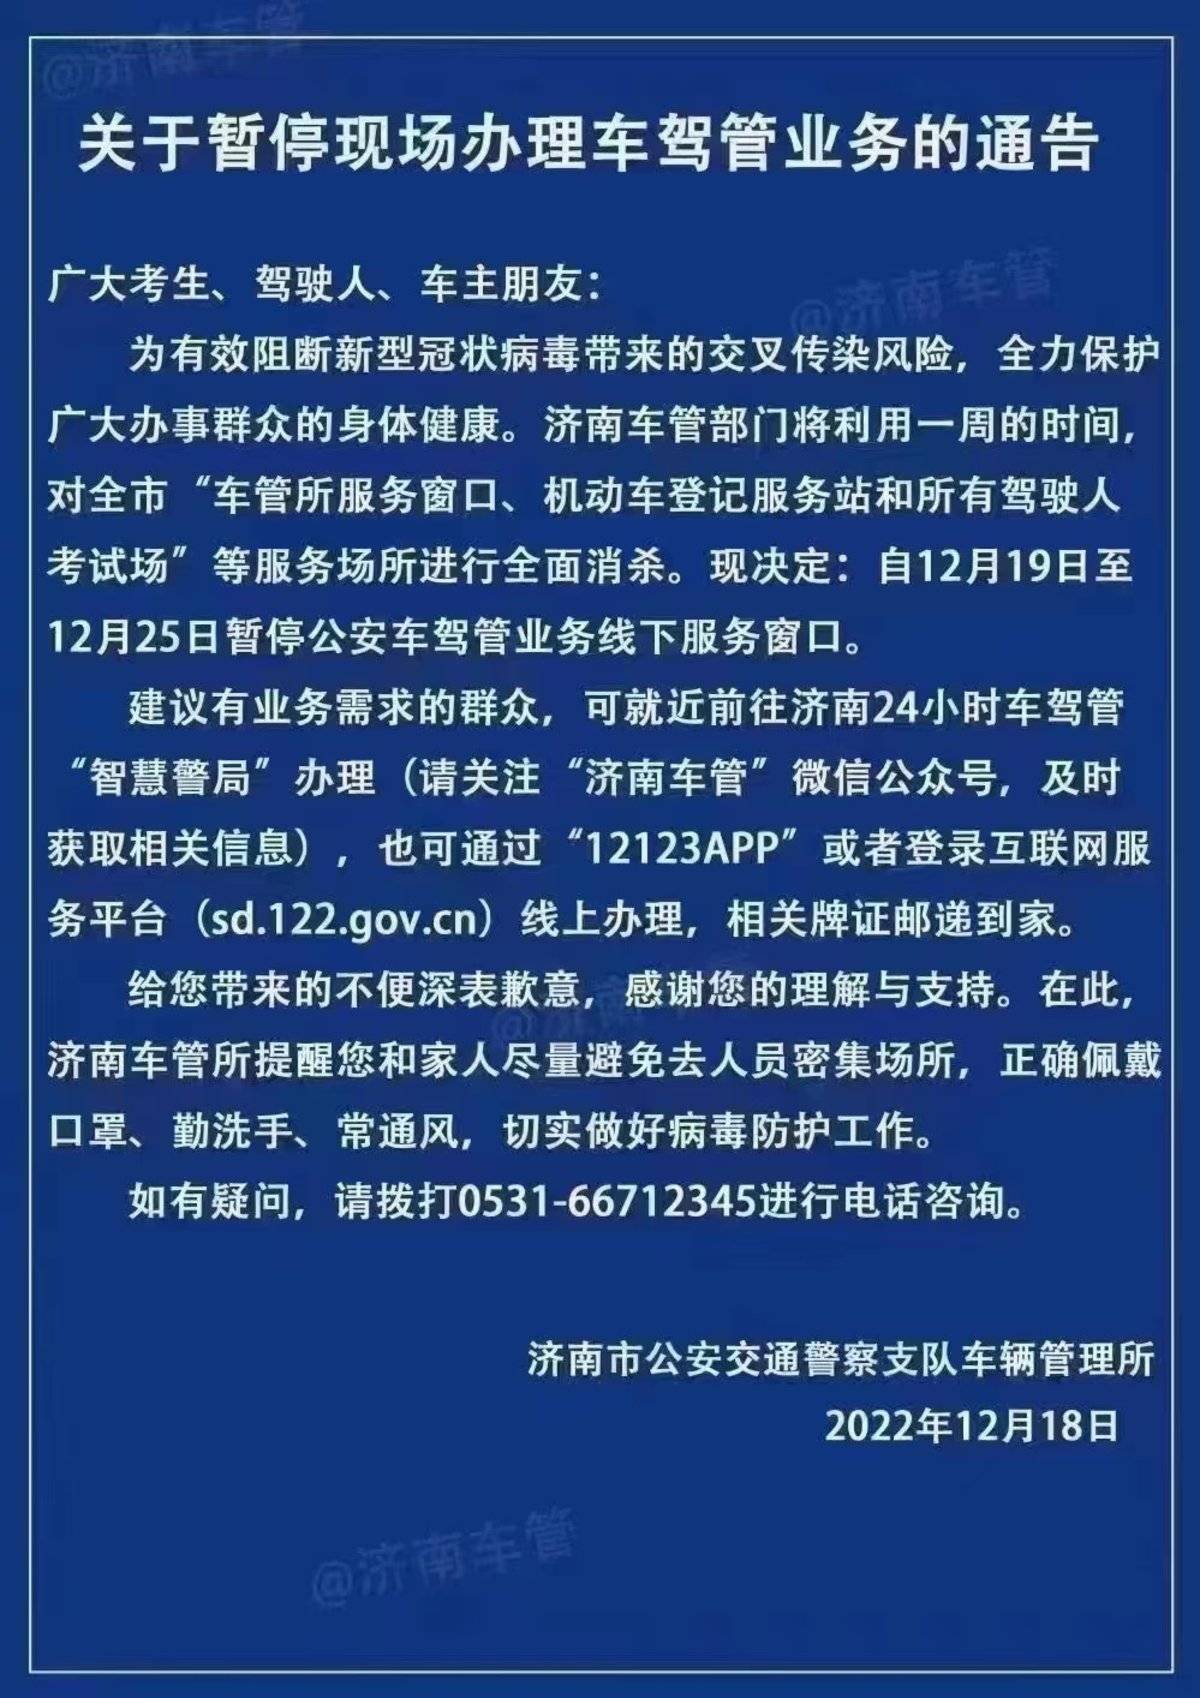 济南车管所：自12月19日至12月25日暂停公安车驾管业务线下服务窗口